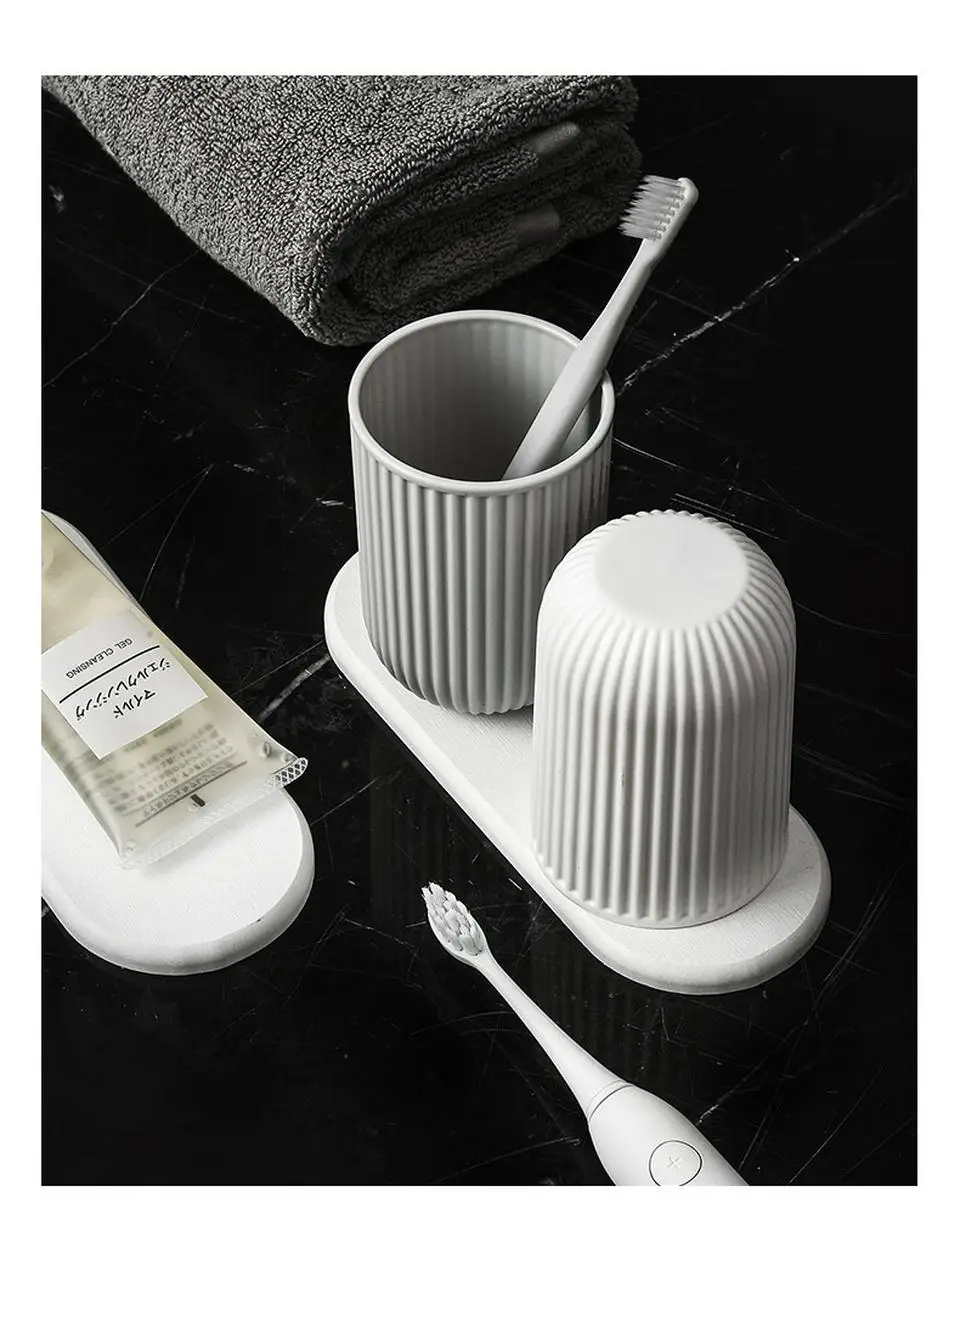 Чашка для мытья с диатомовой грязевой подушечкой простая Пара Набор стакан для зубной щетки Нескользящая Водонепроницаемая чашка для полоскания рта набор аксессуаров наборы для ванной комнаты